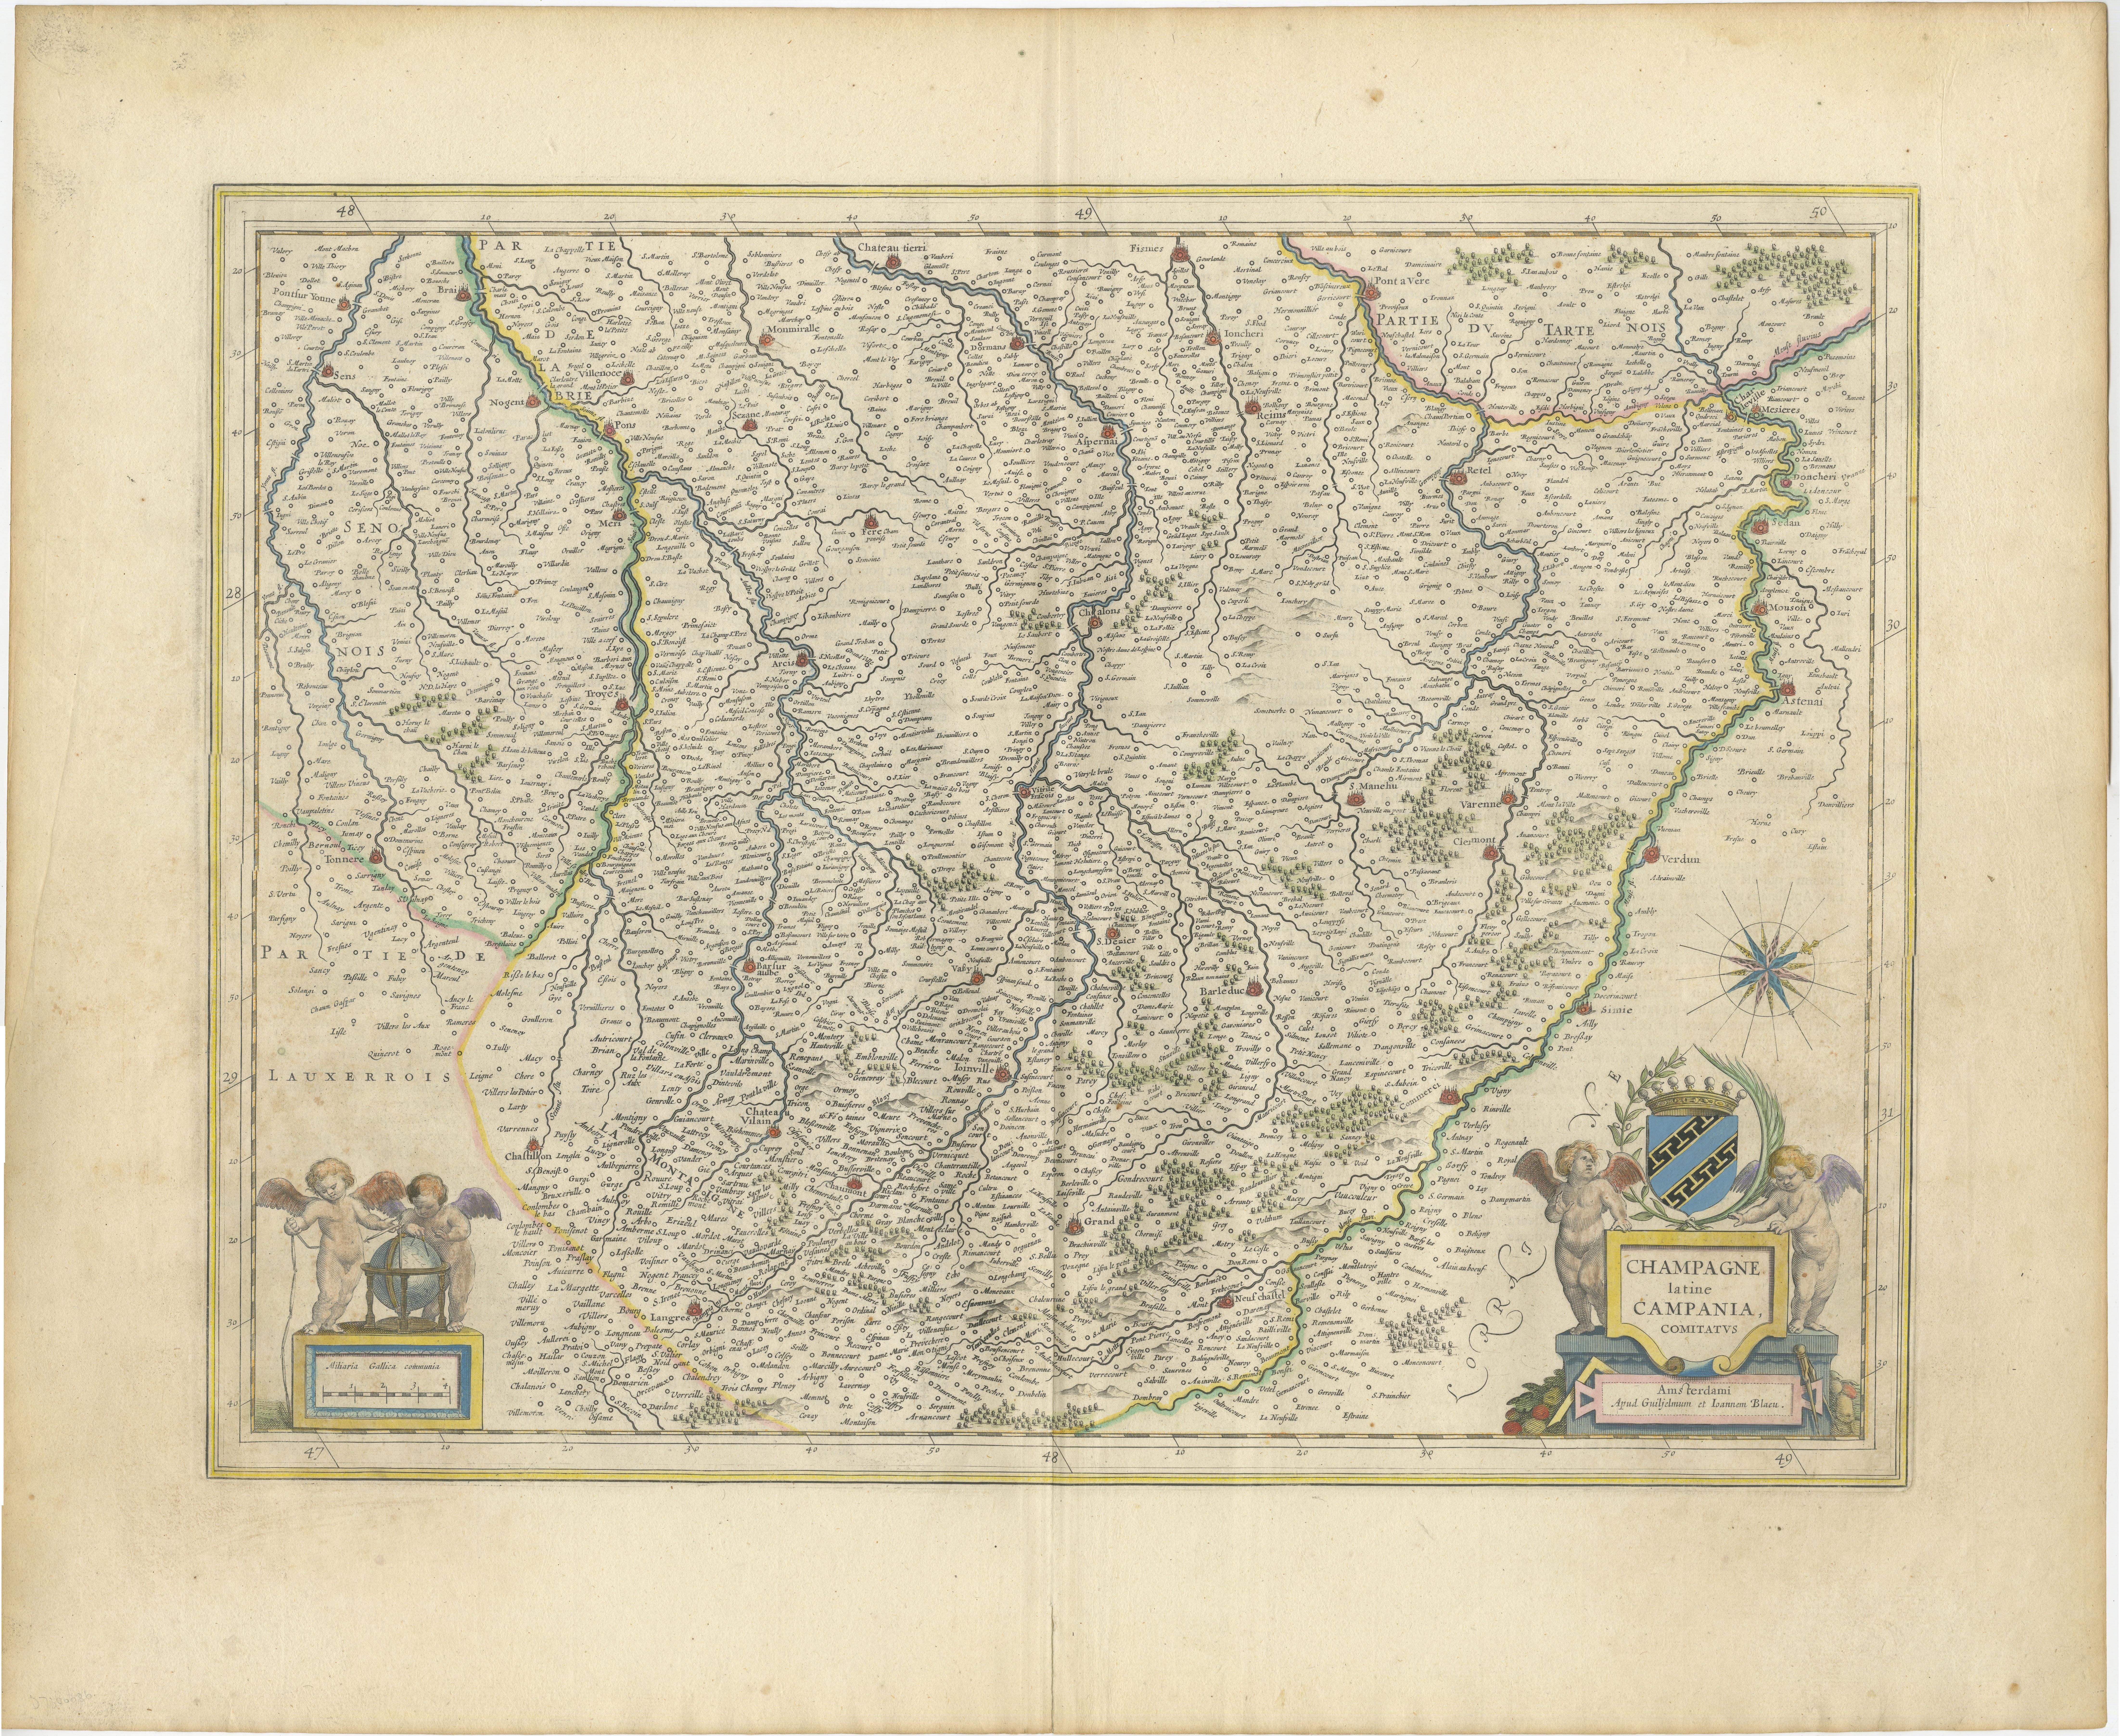 Eine originale handkolorierte antike Karte, die die historische Region Champagne in Frankreich zeigt, die auf Lateinisch als 